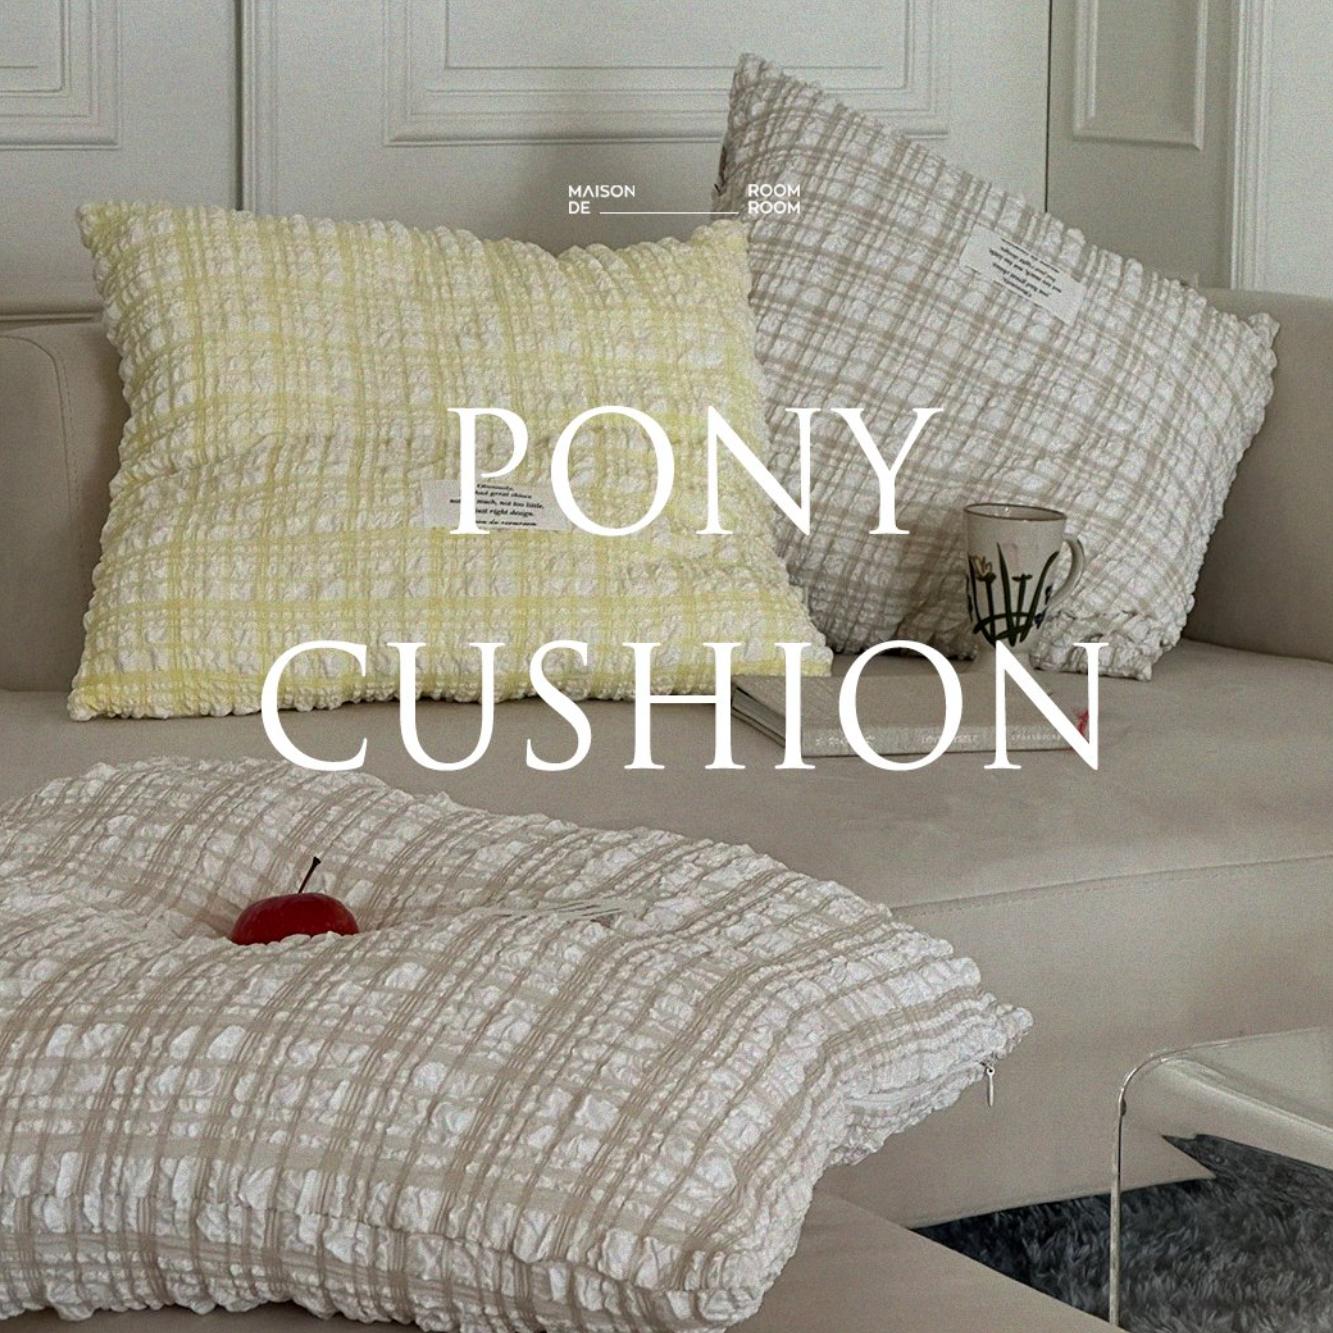 PONY cushion case